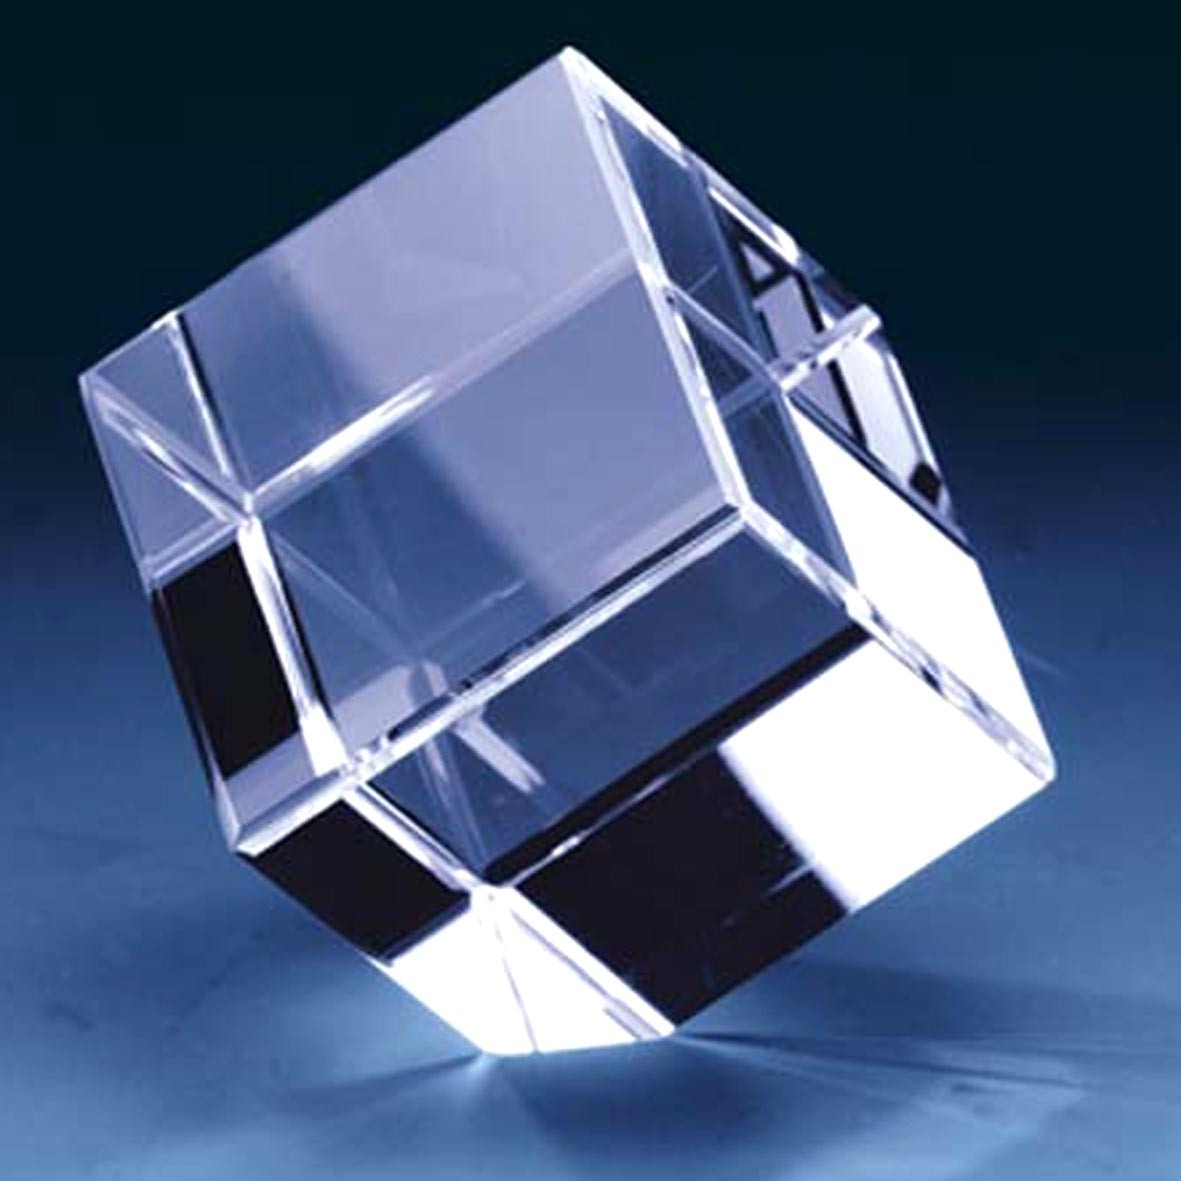 Blank-Crystal-Cube-Cut-Corner-CC-BL-003-.jpg